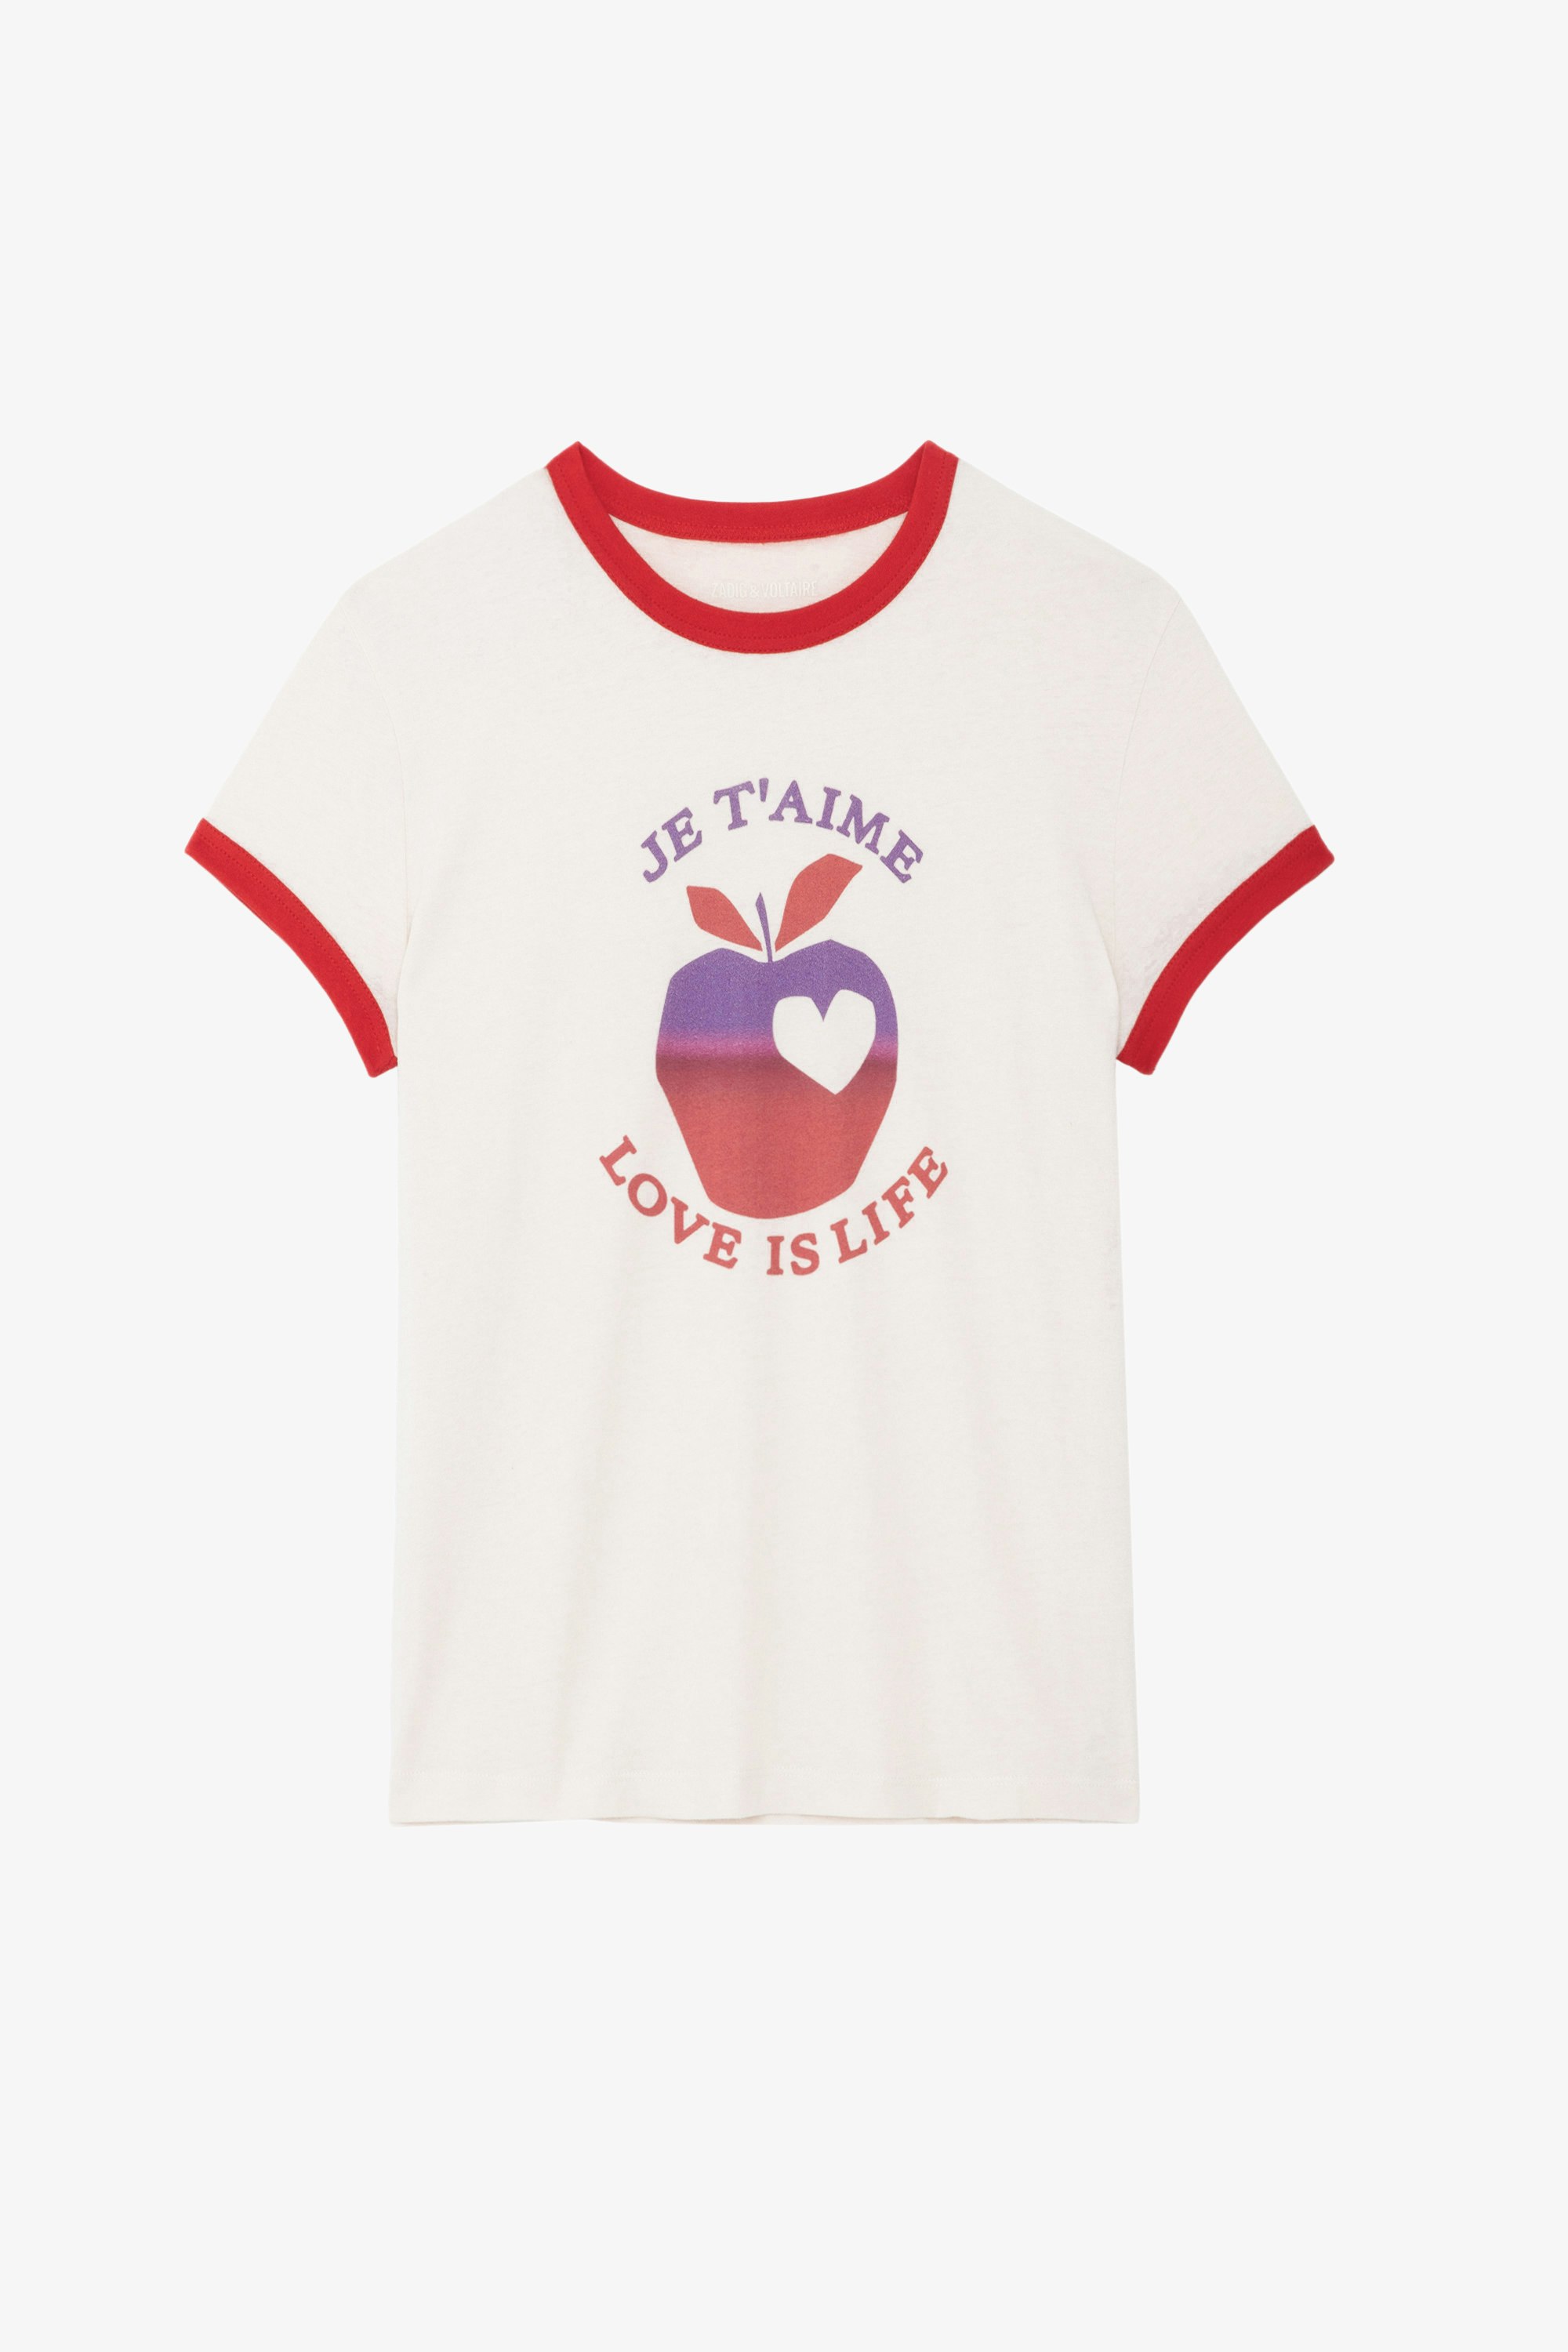 Camiseta Walk Love Is Life - Camiseta en rosa claro con cuello redondo, manga corta, motivos y bordes de contraste.